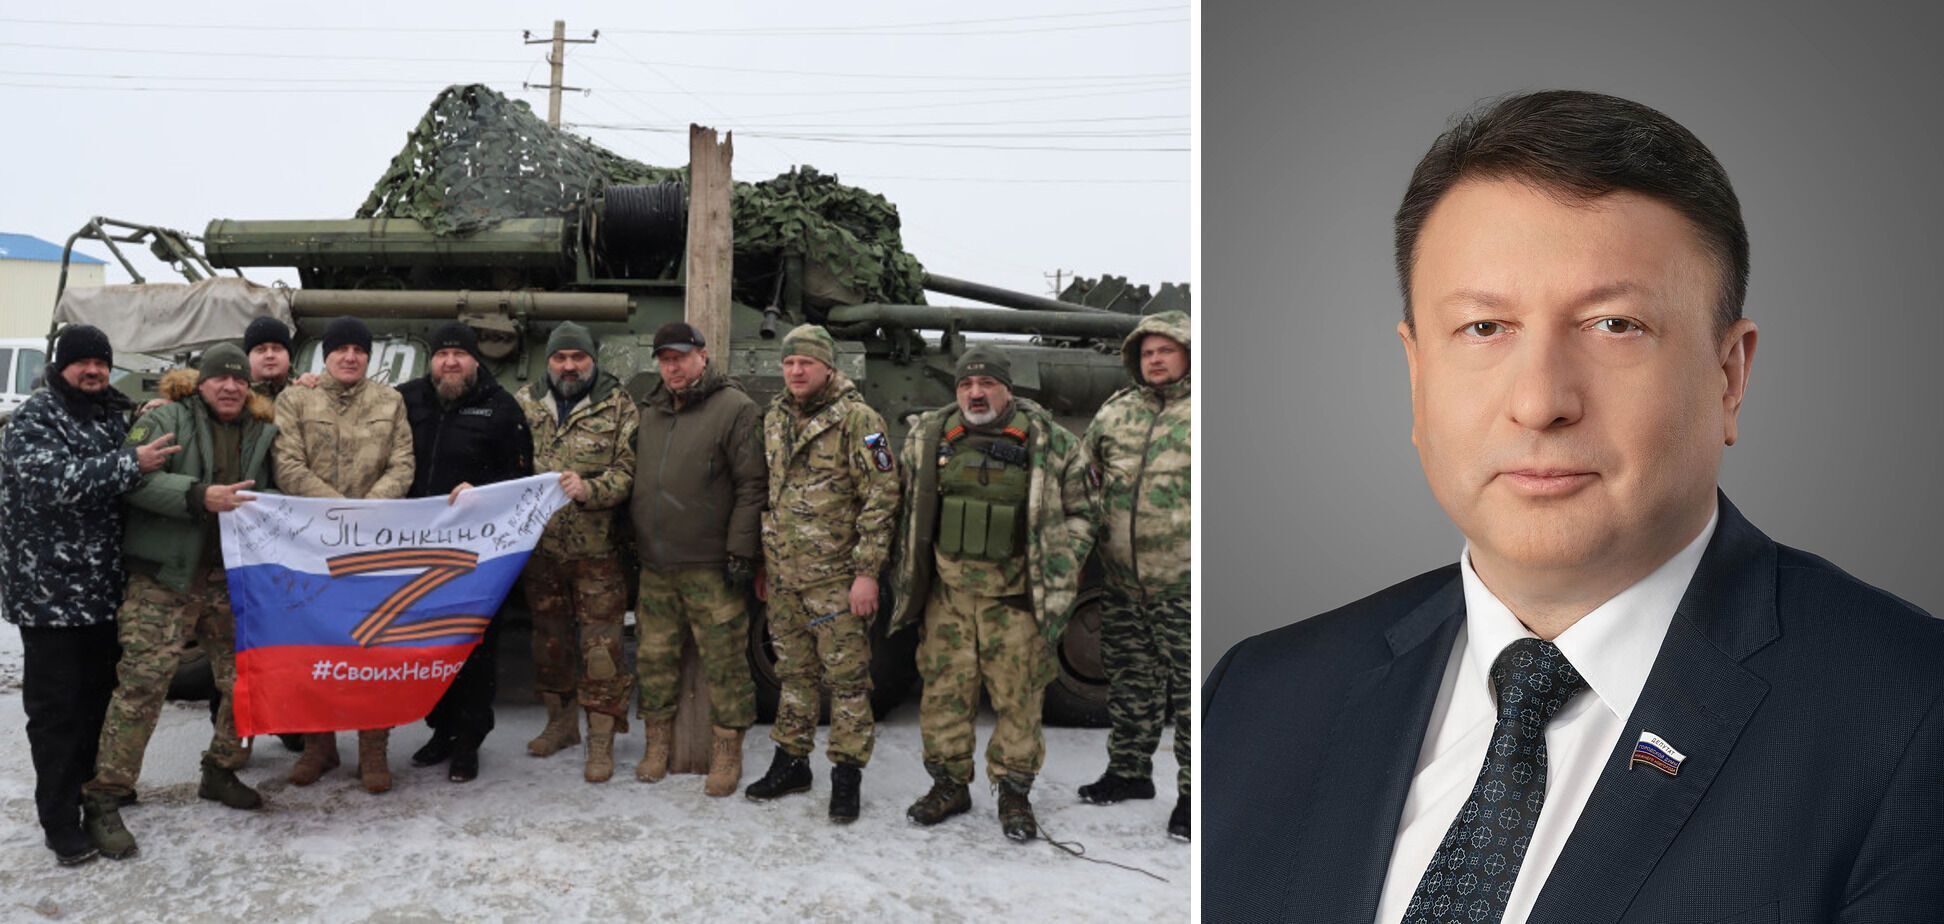 "Фото с Путиным, Шойгу и оружием": как украинцы будут бороться за ОИ при допуске РФ и почему россияне могут отказаться сами